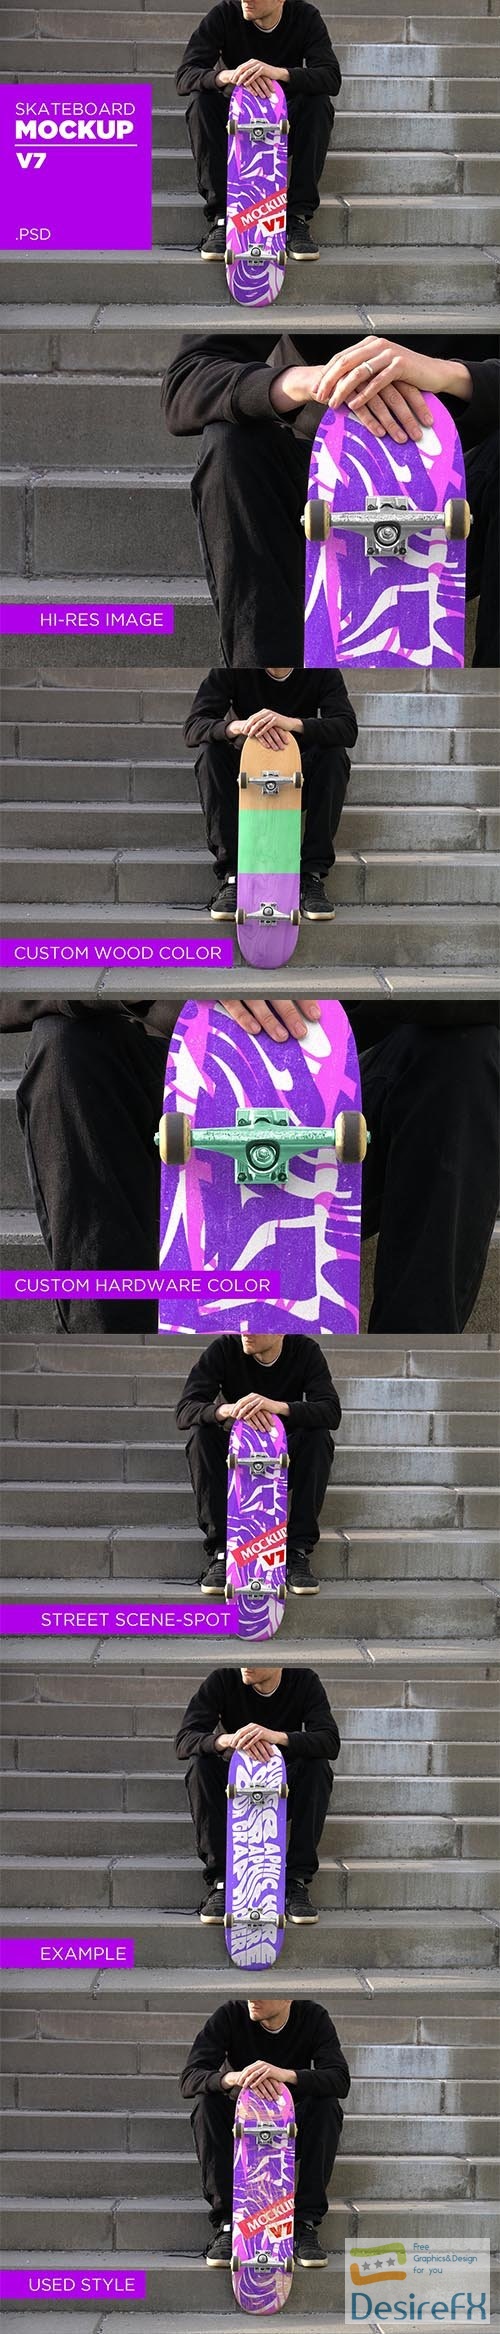 CreativeMarket - Skateboard Mockup V7 - PSD 5935931